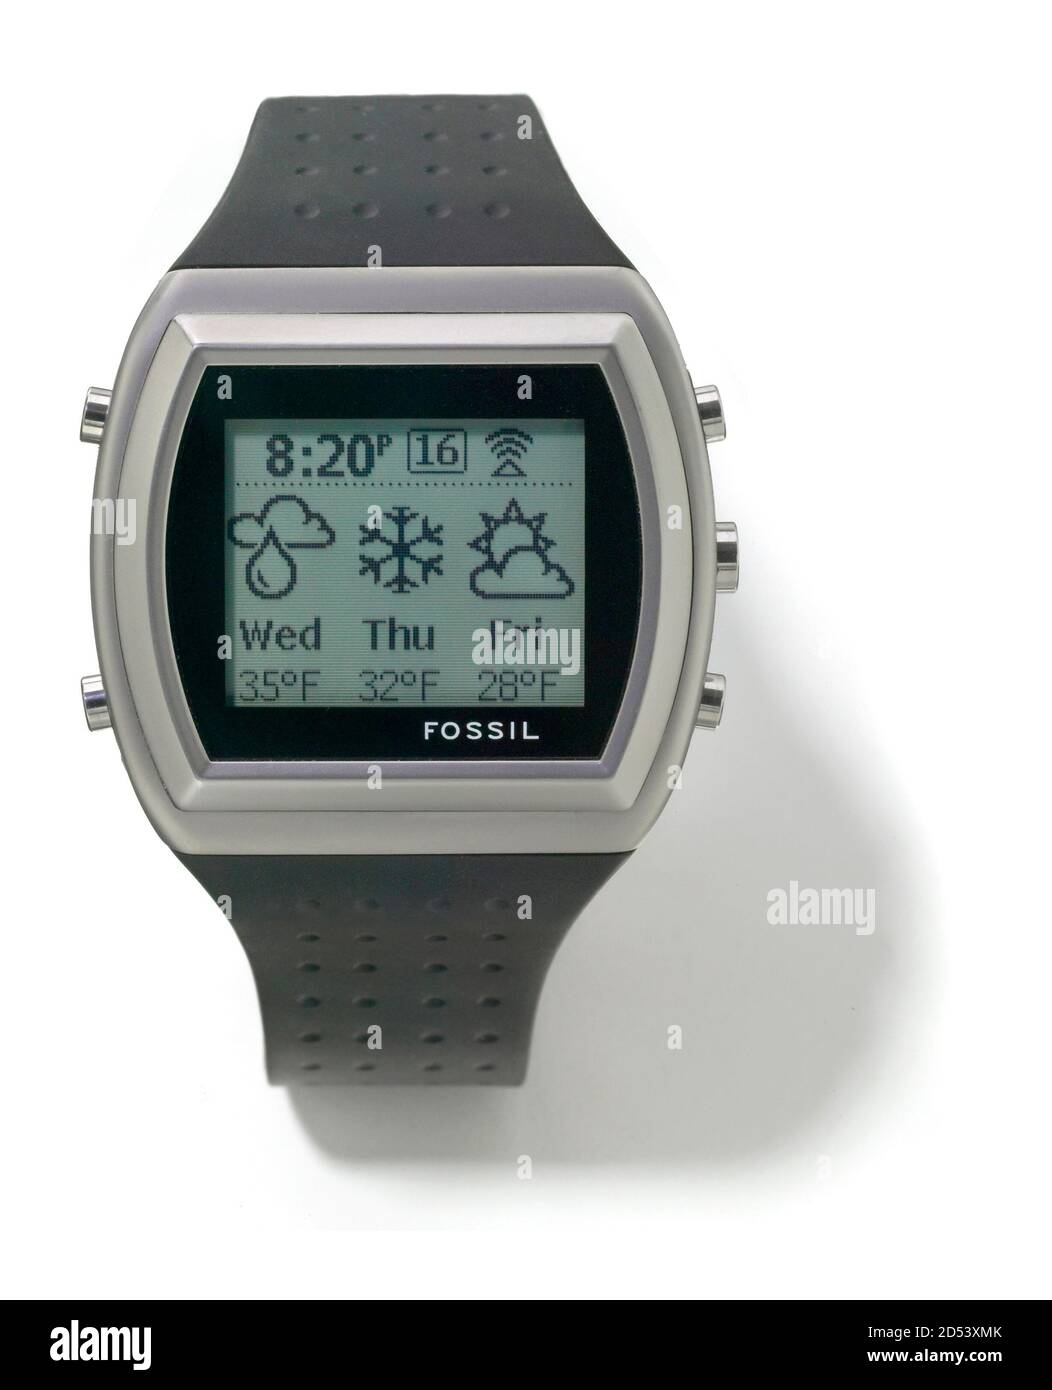 Fossil msn Direct Armbanduhr, die das Wetter über fm prognostiziert Radio  auf weißem Hintergrund fotografiert Stockfotografie - Alamy